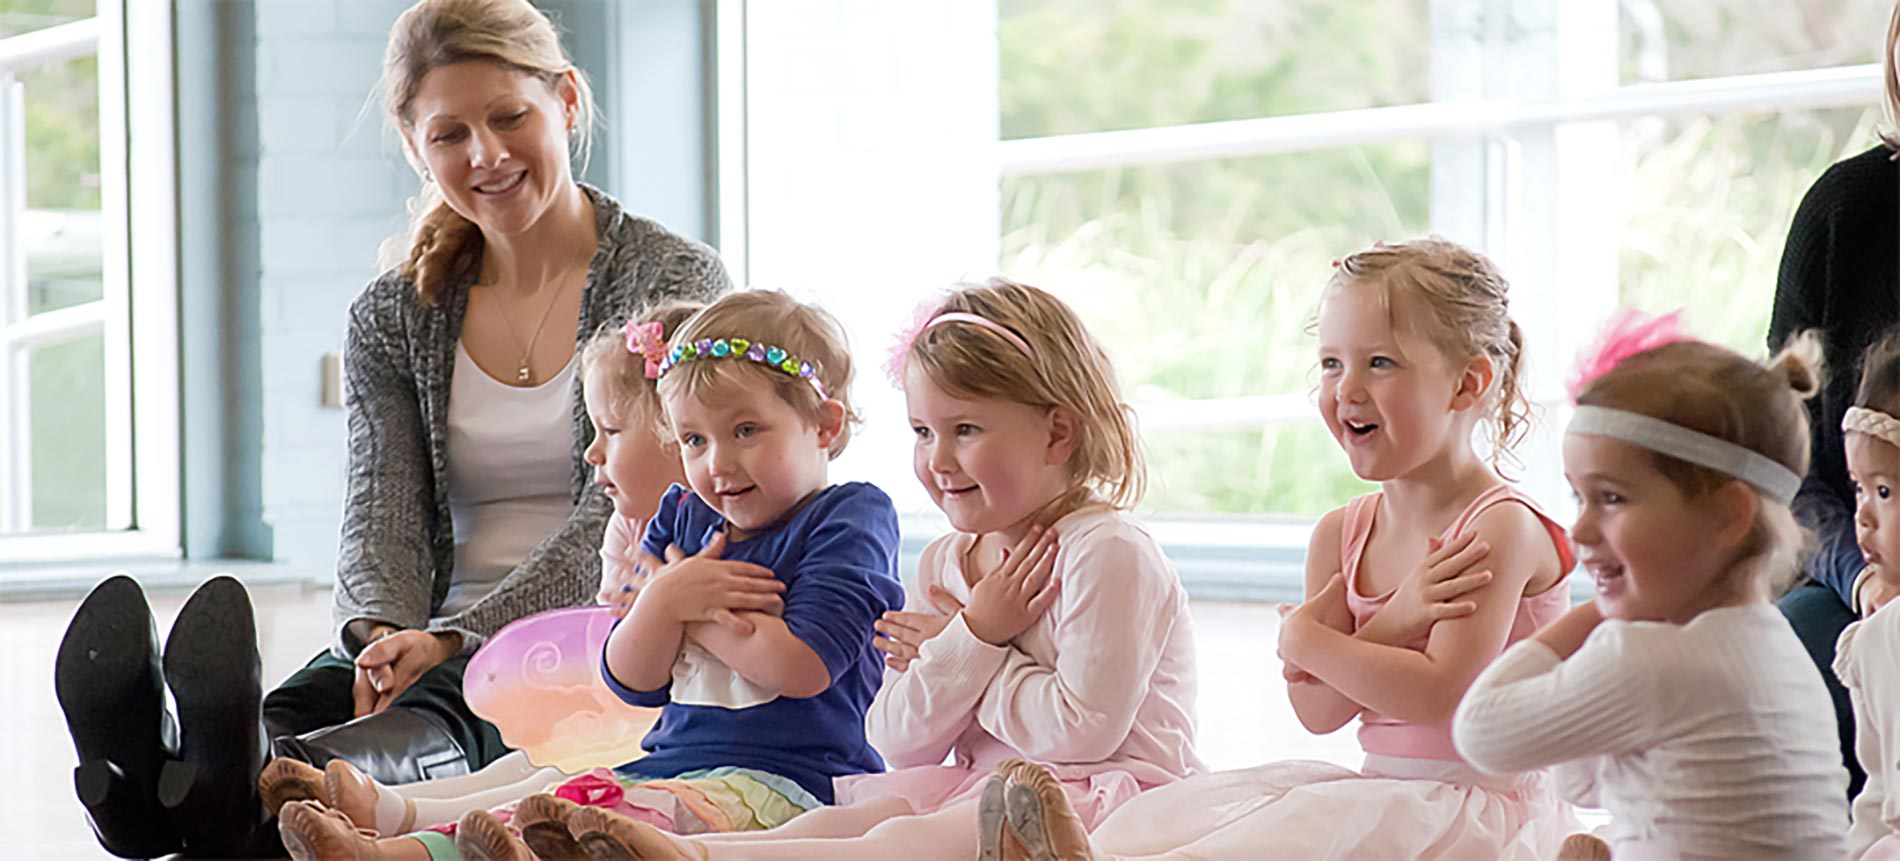 Kinderballet Mummy & Me - Ballet Classes for Toddlers - Redland Dance Cleveland, Brisbane